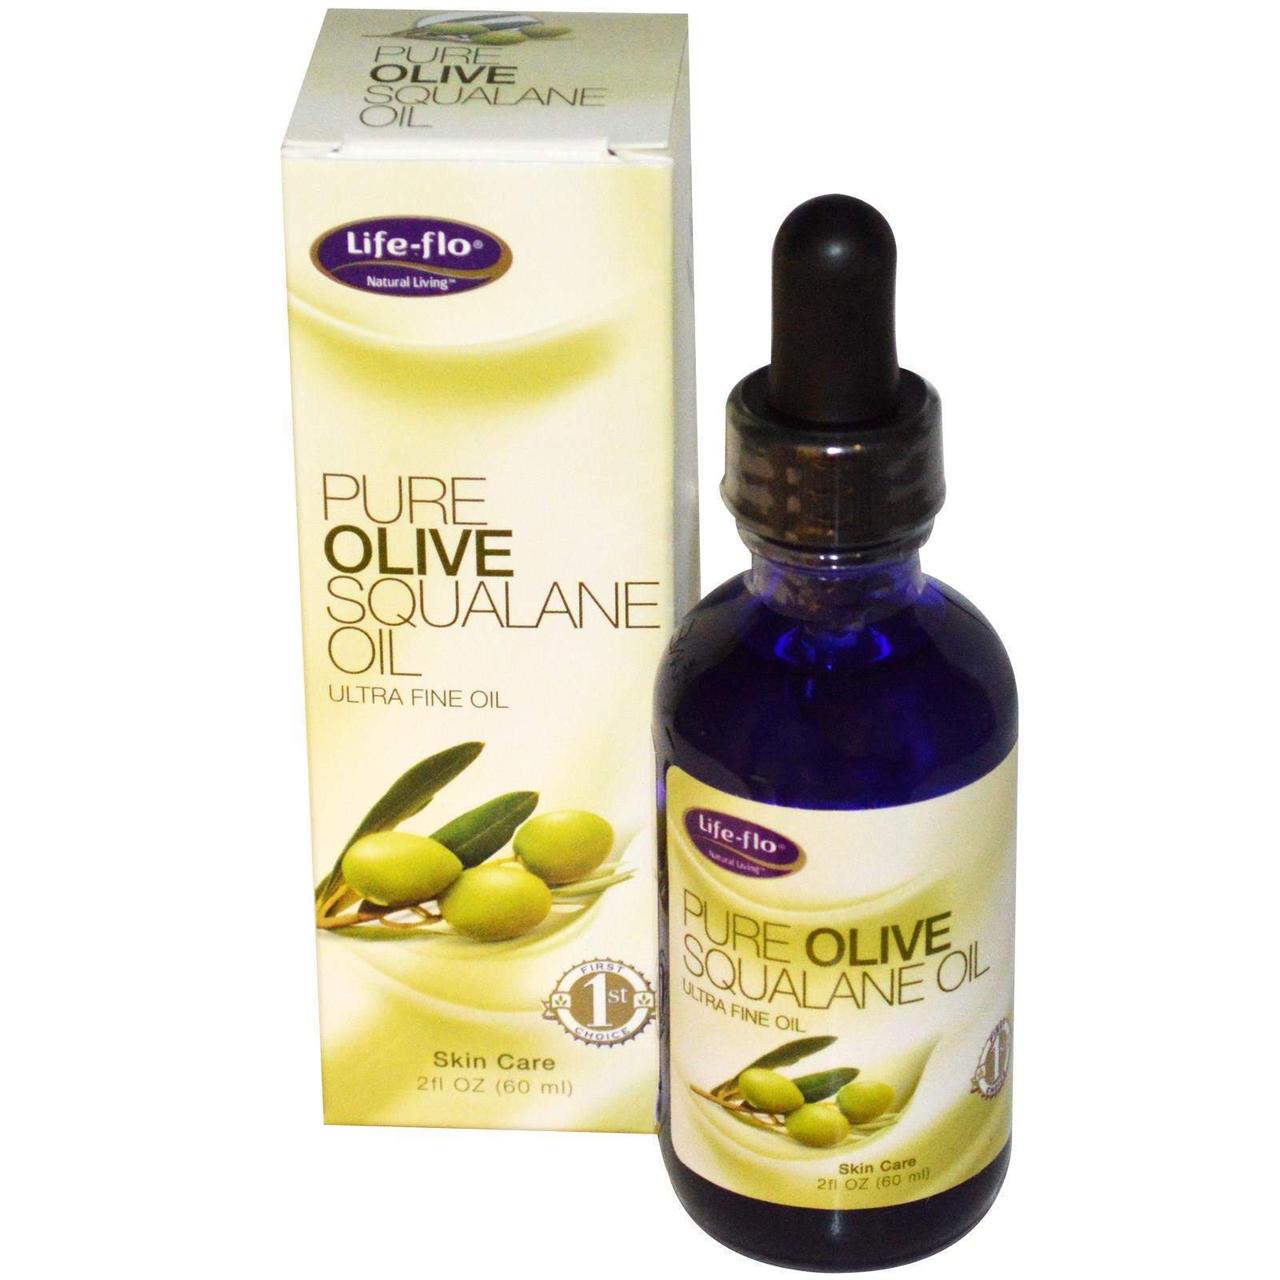 Сквалелений оливкової олії Olive Squalane Oil Life Flo Health чистий 60 мл